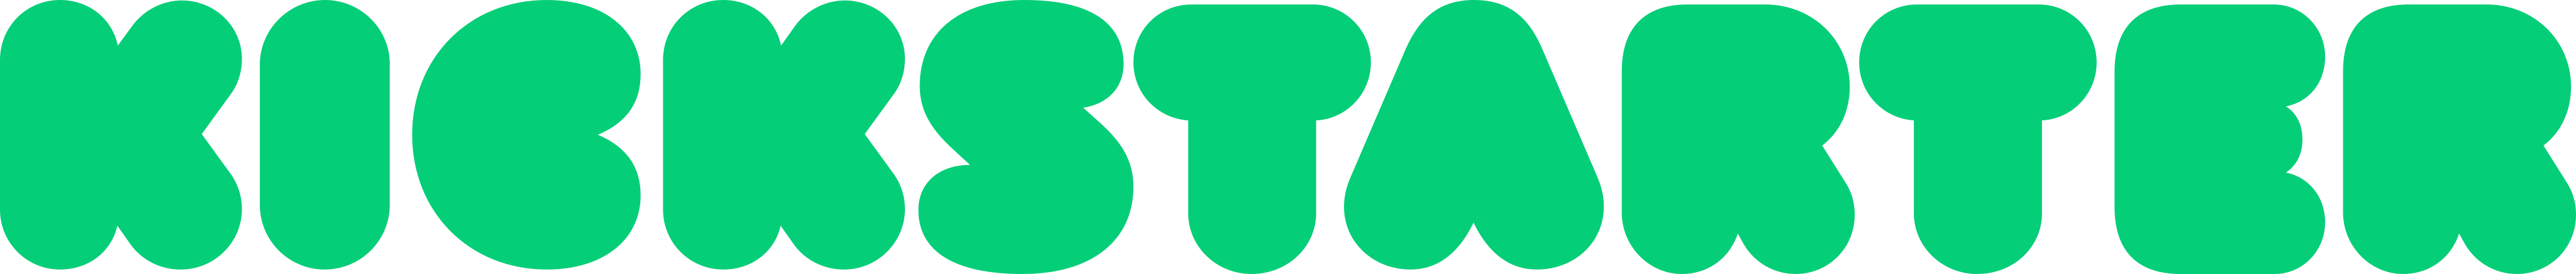 kickstarter logo - Kickstarter Logo